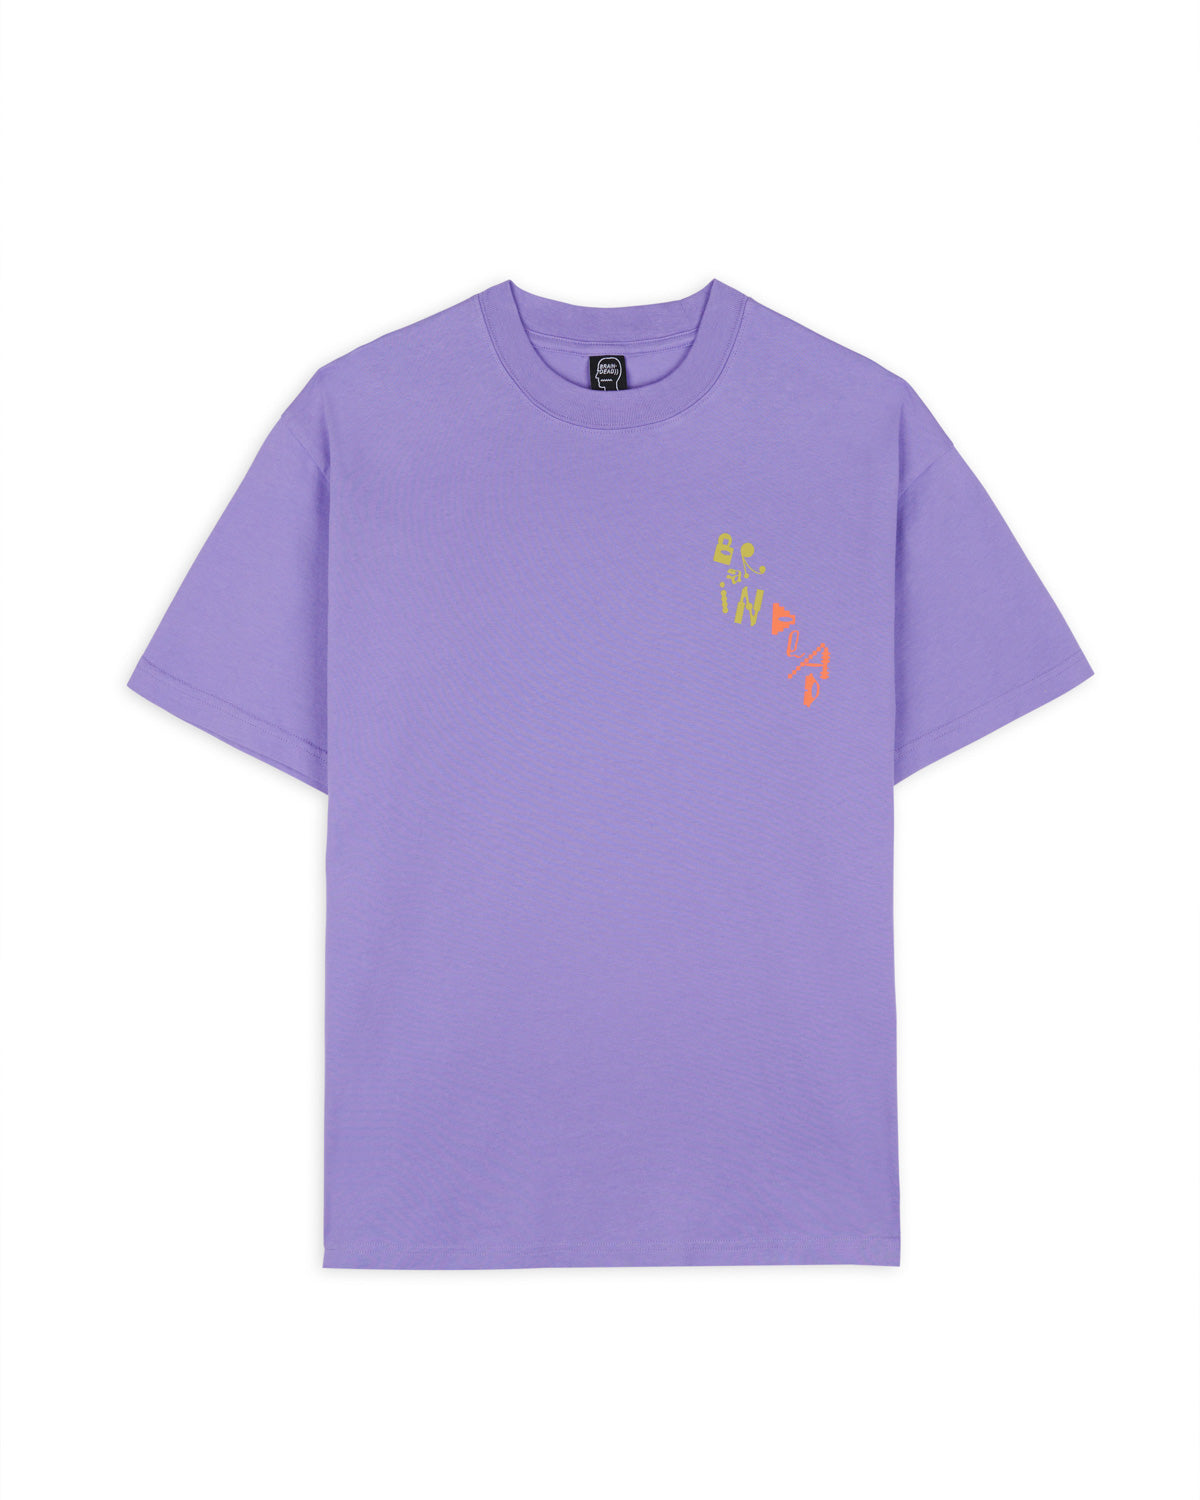 ET T-Shirt - Purple 1